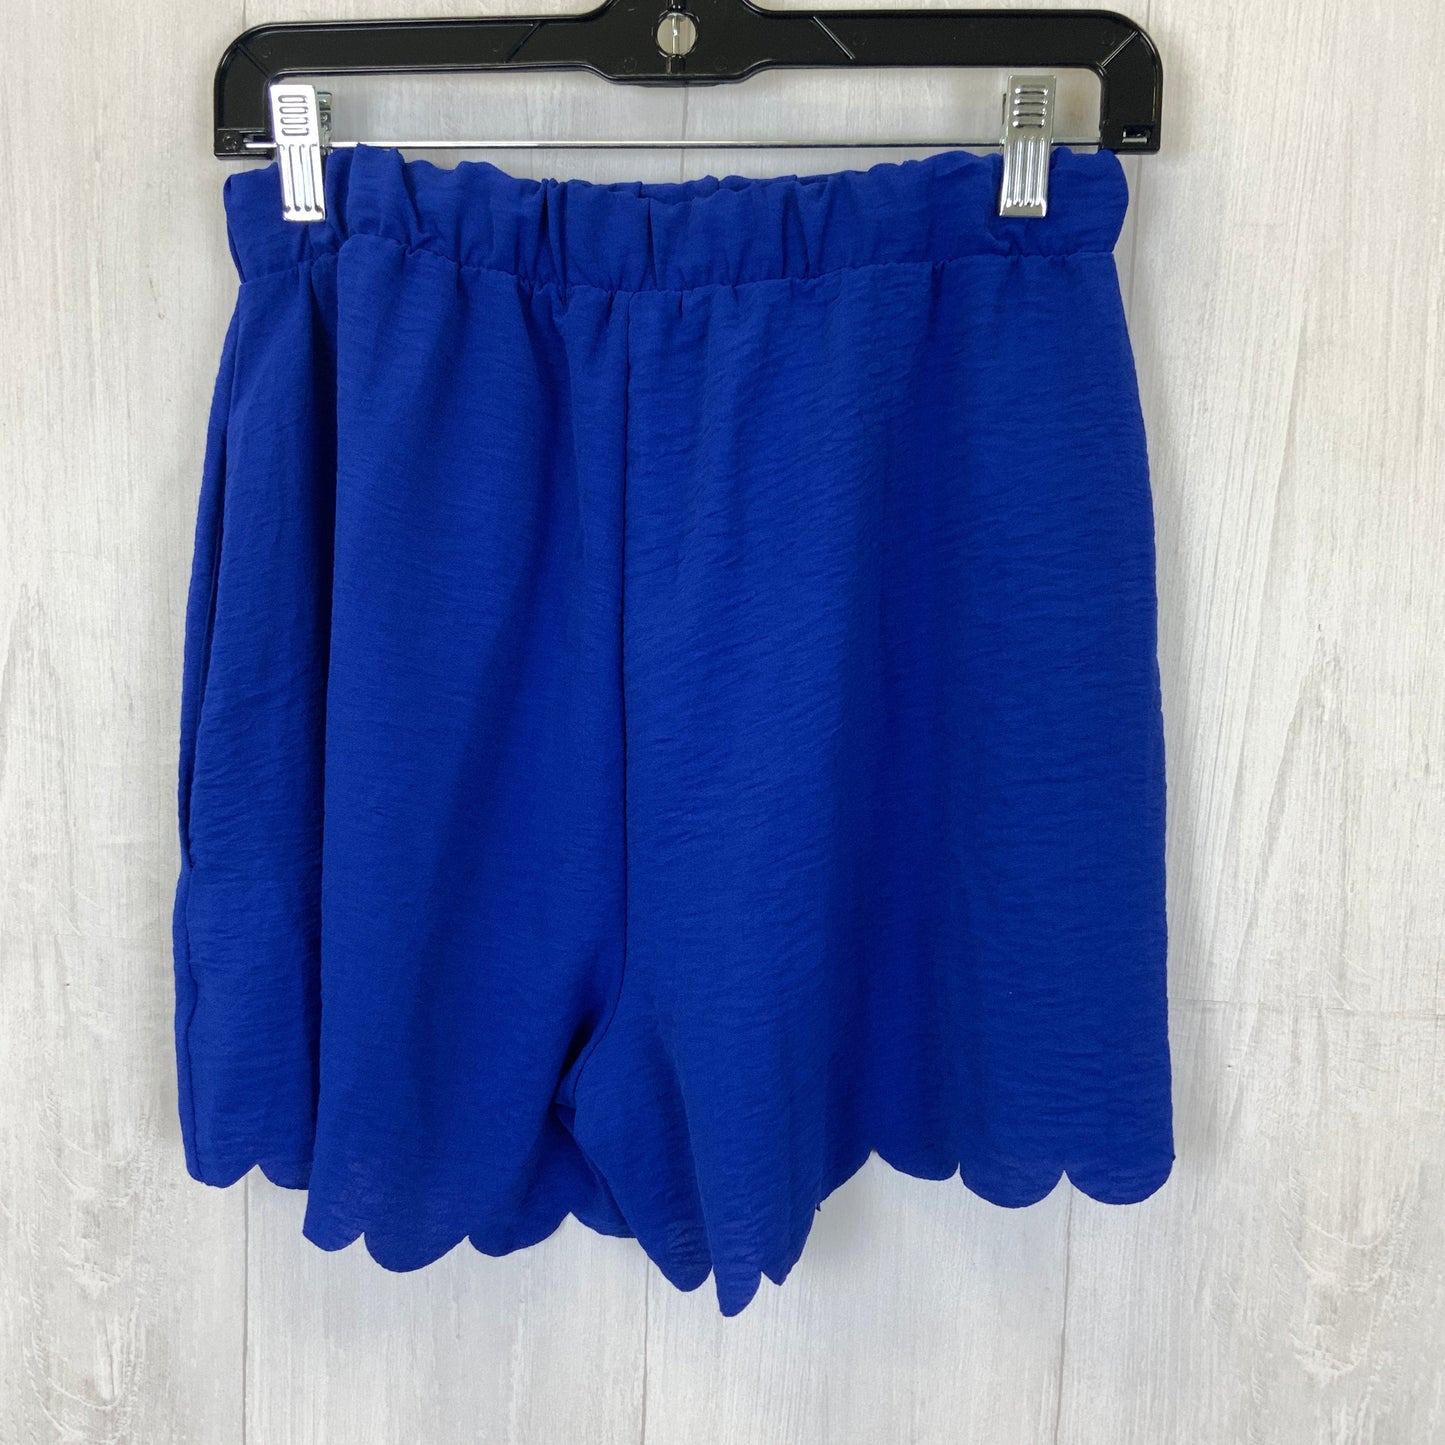 Blue Shorts Cotton Bleu, Size S